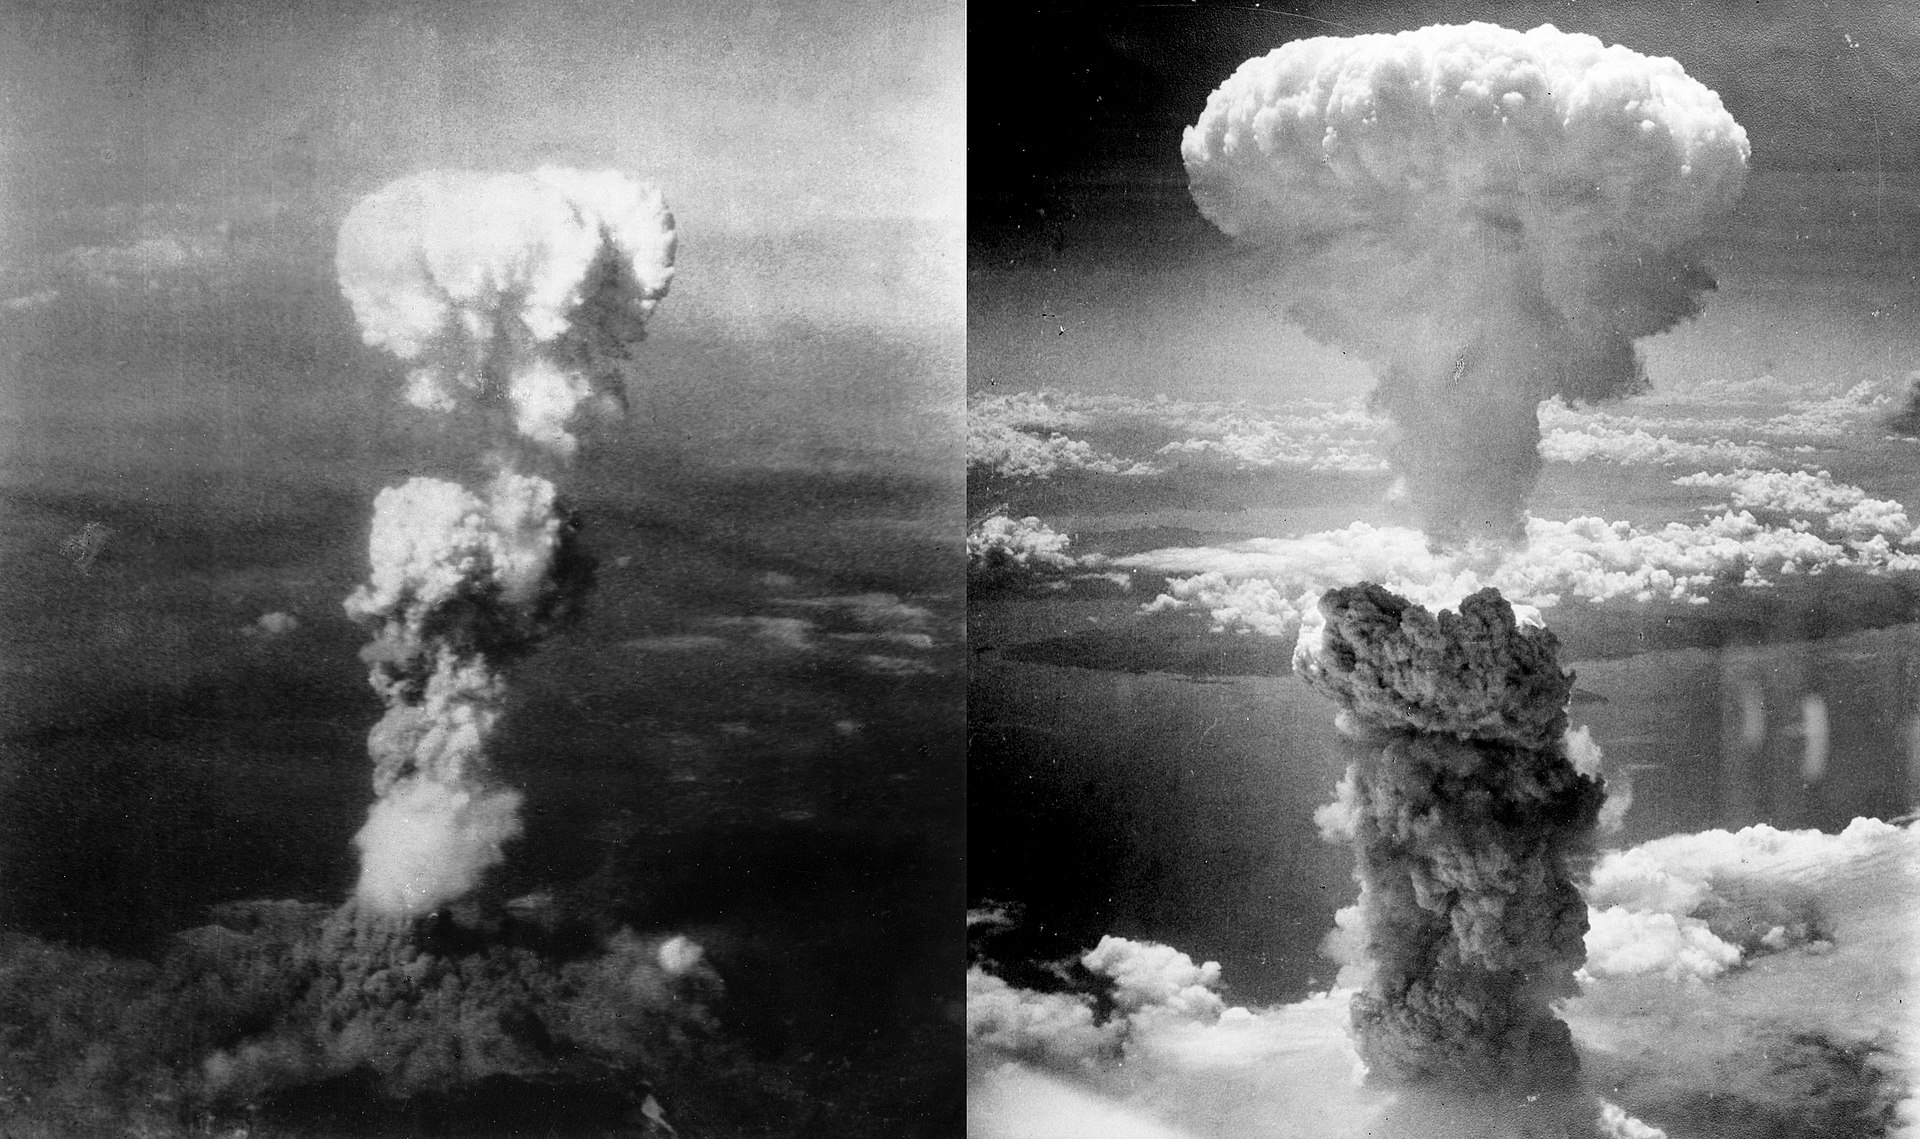 Hiroshima & Nagasaki A-Bombs